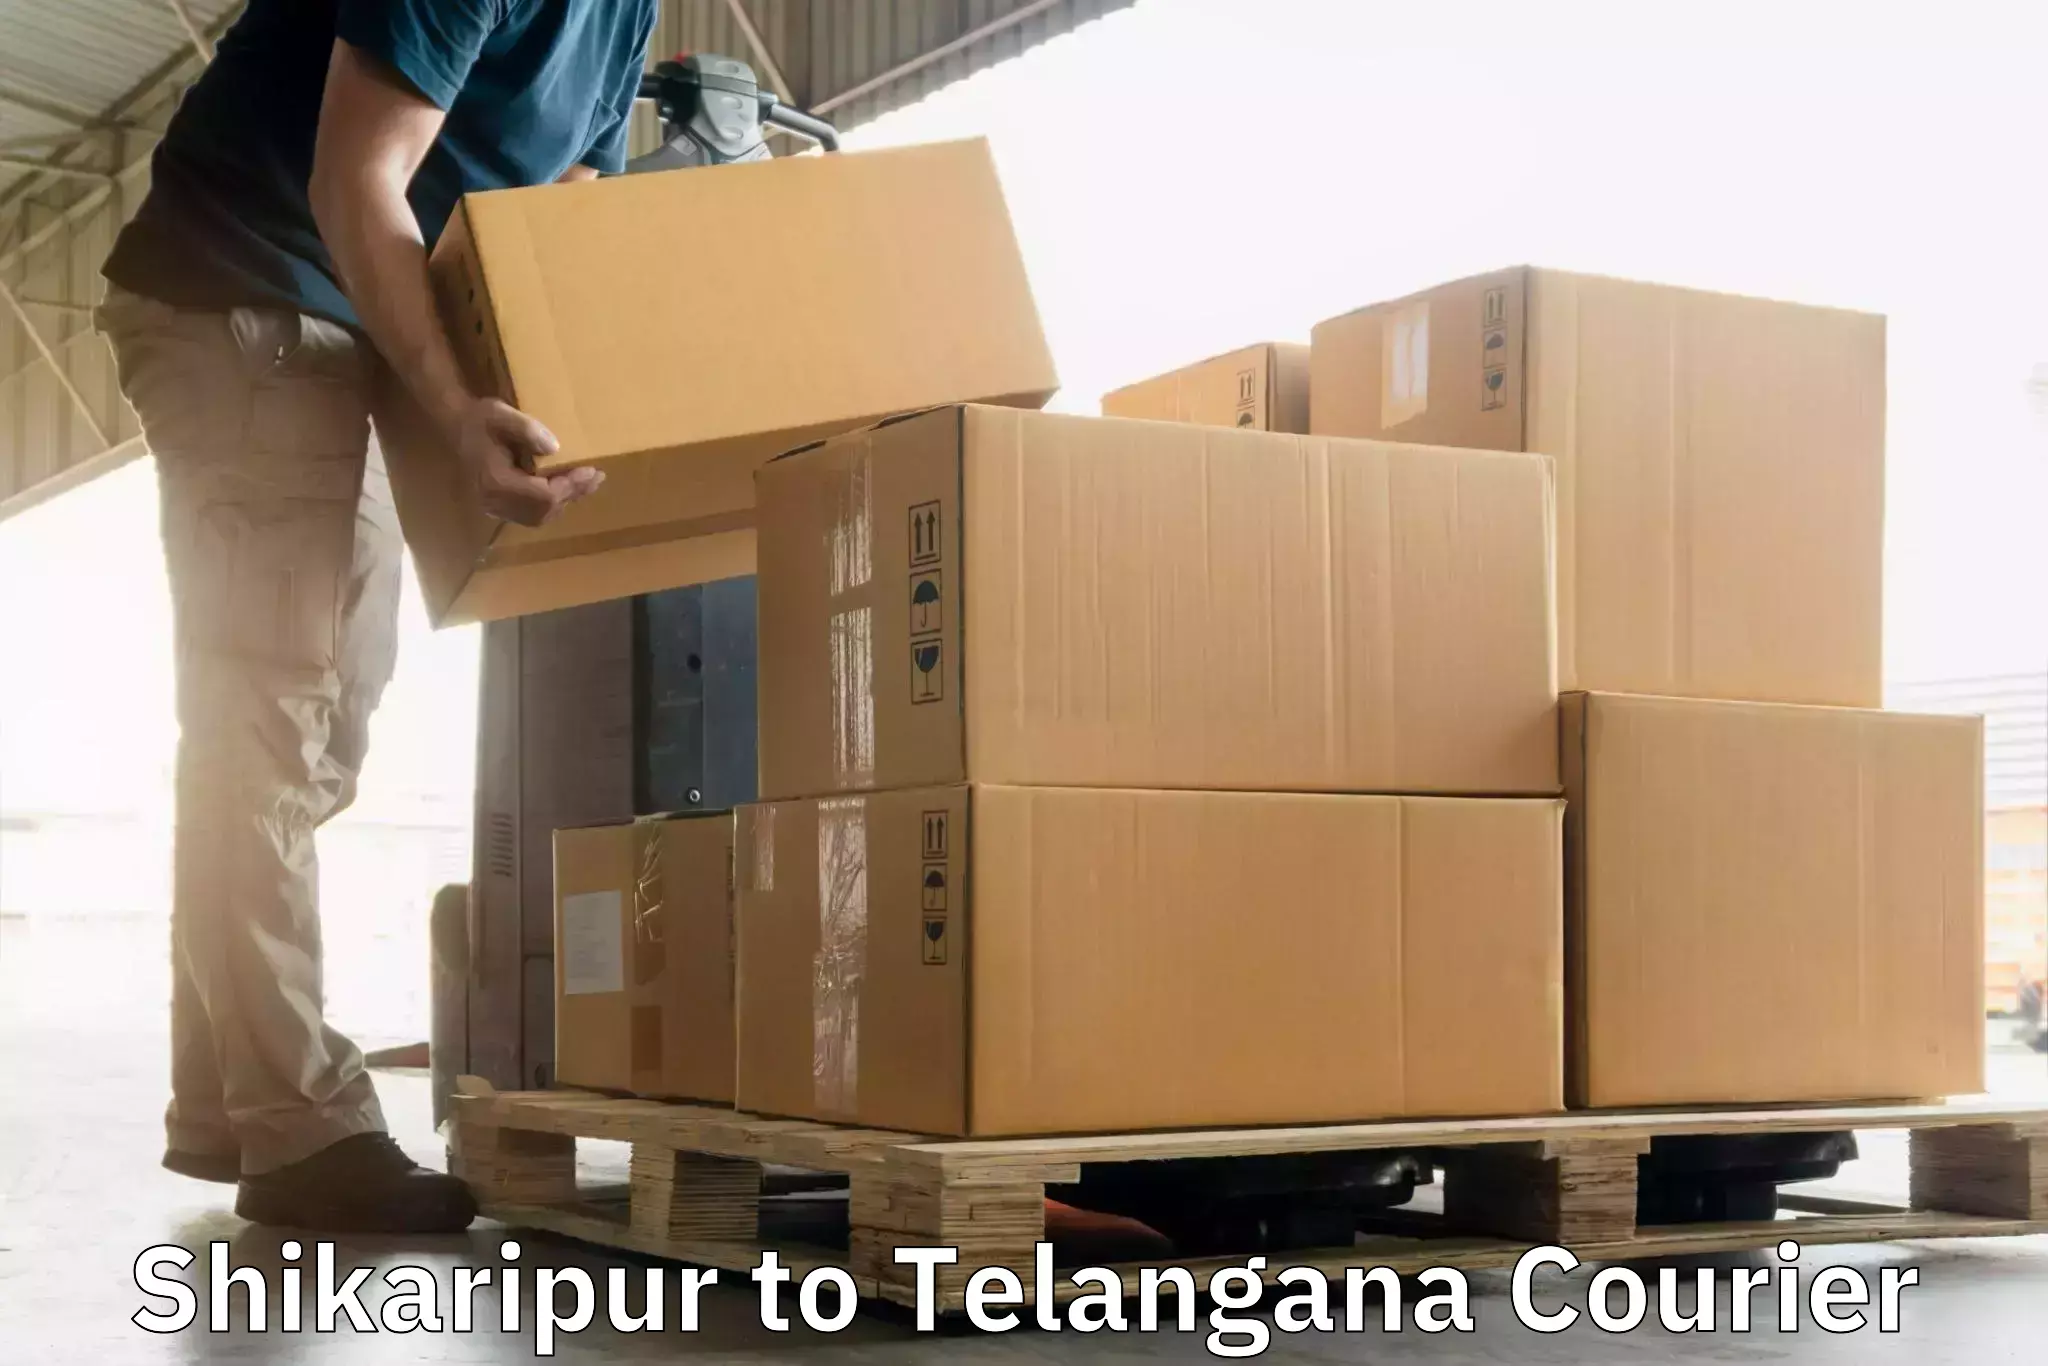 Next-day freight services Shikaripur to Tiryani